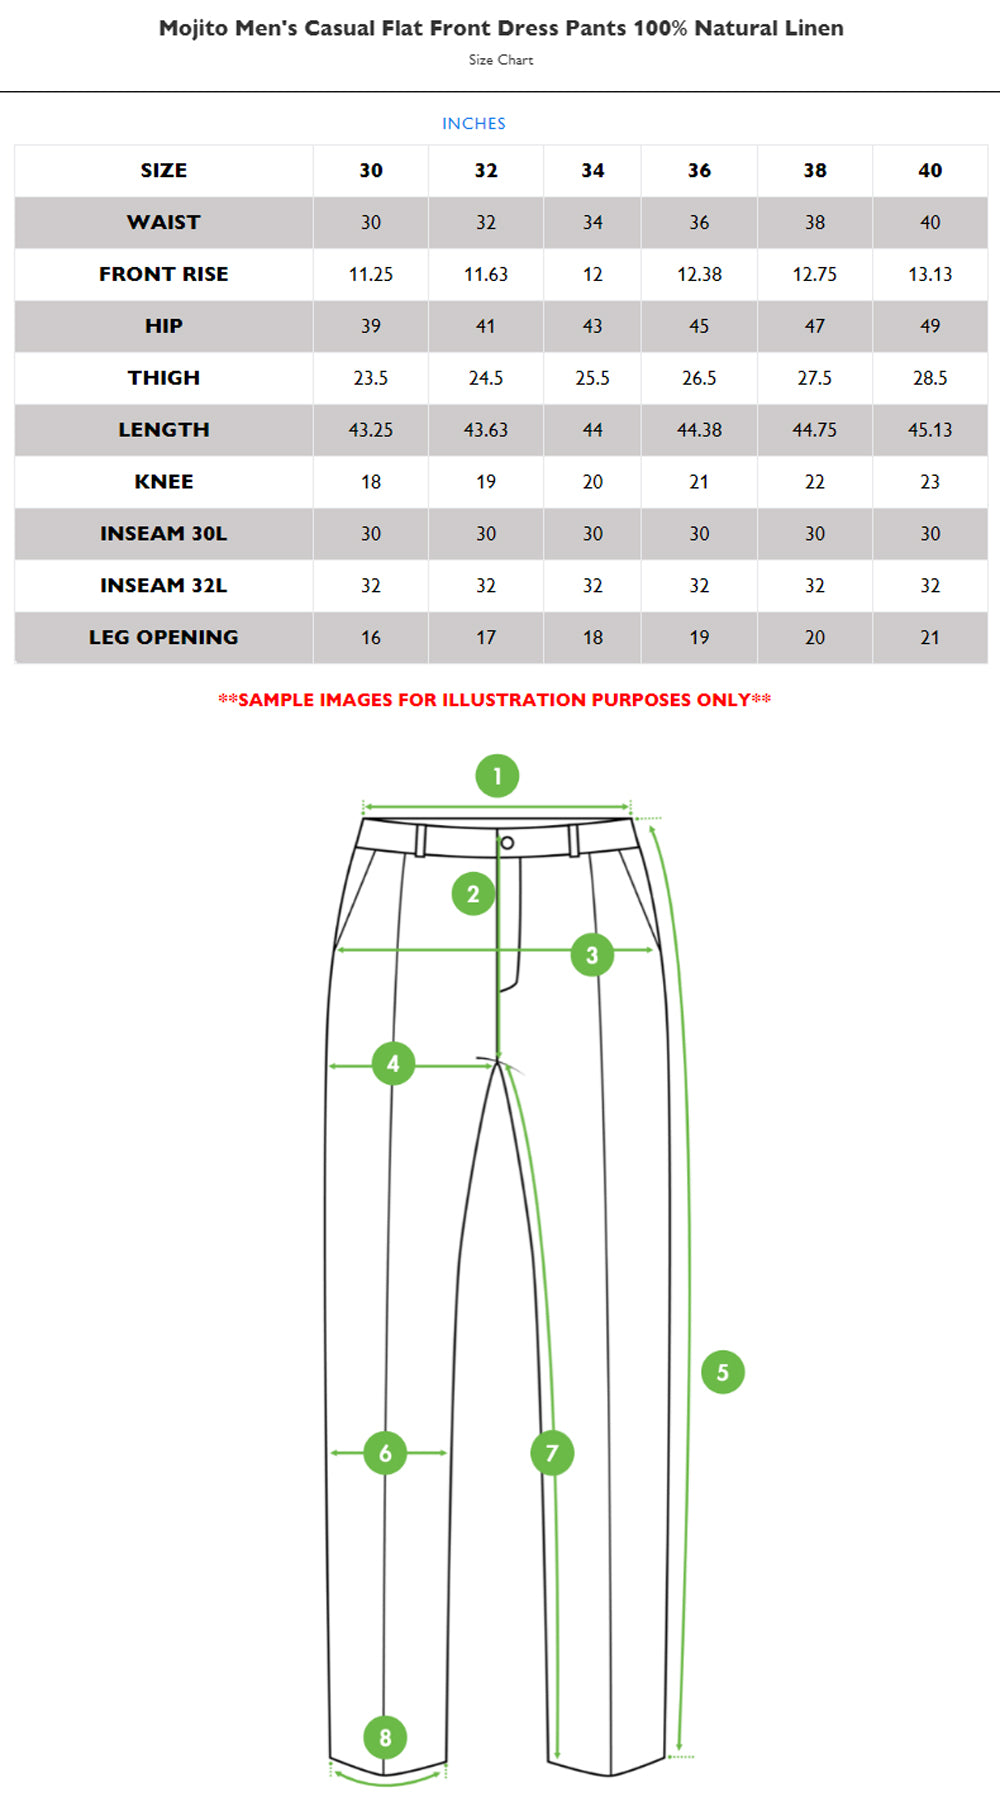 Mojito Men's Casual Flat Front Dress Pants 100% Natural Linen